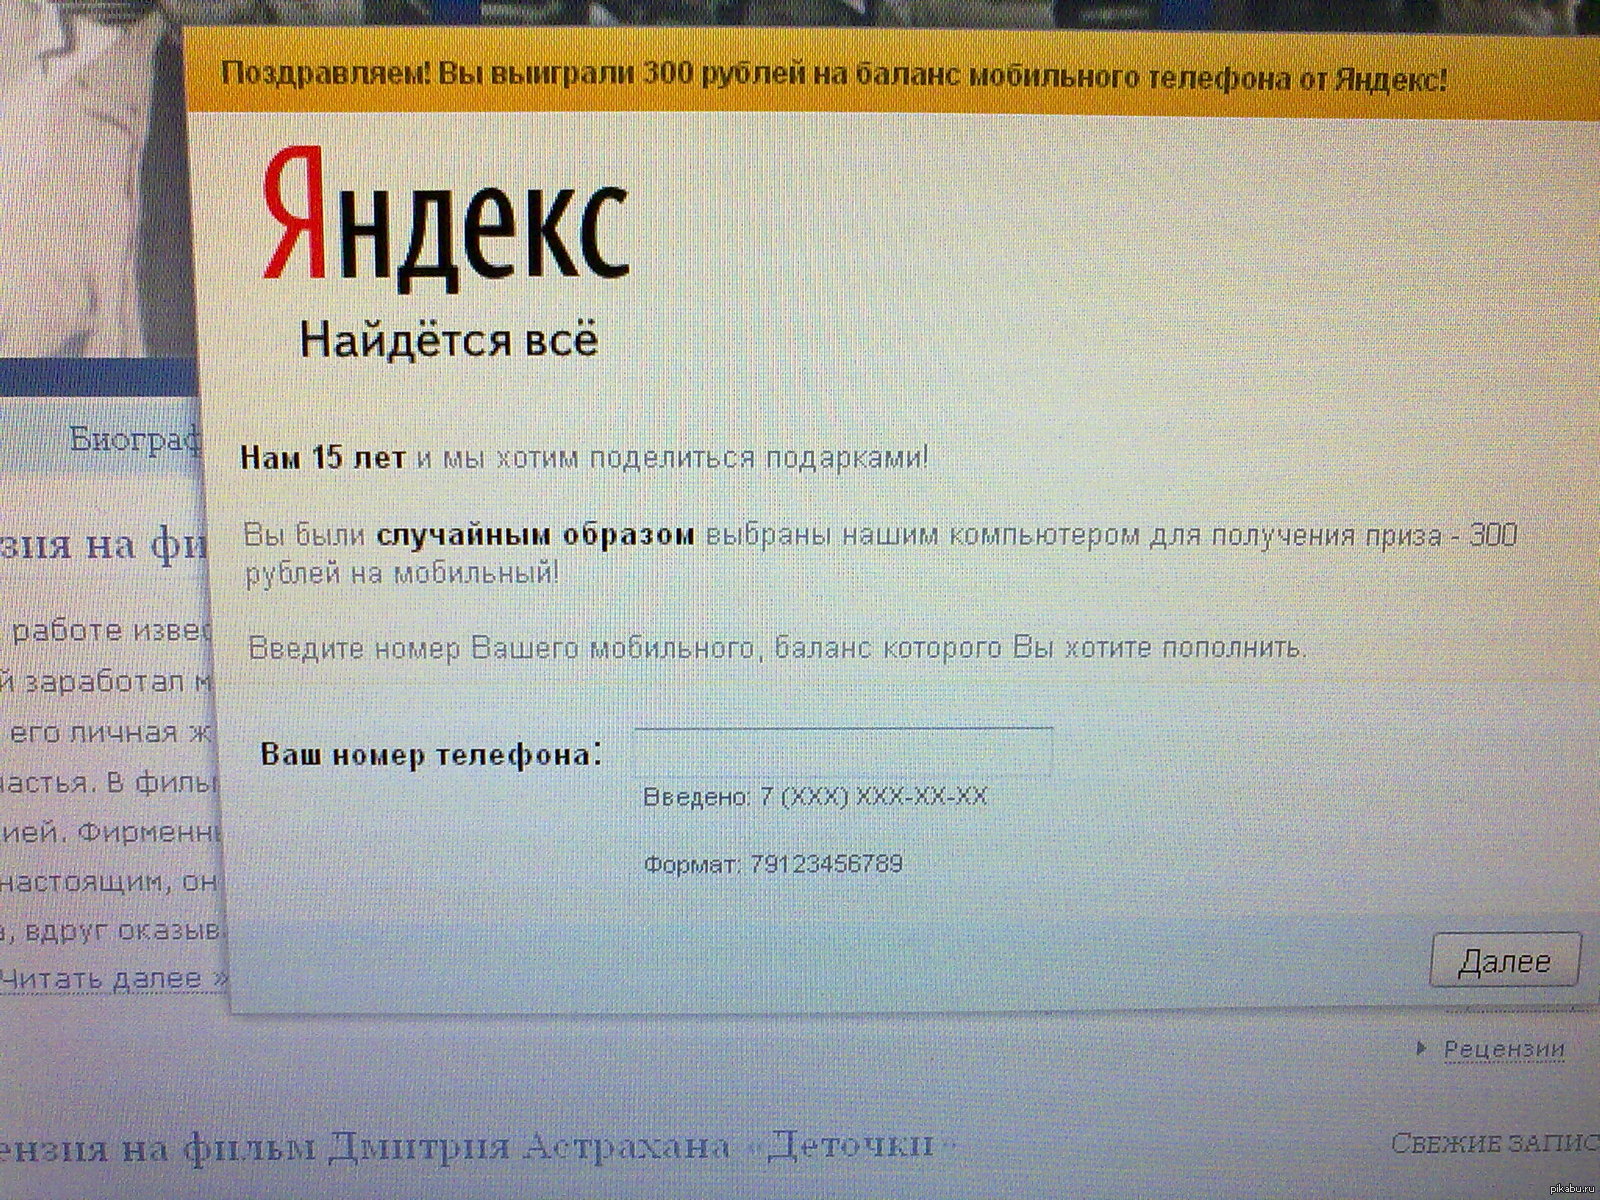 300 Рублей от Яндекс